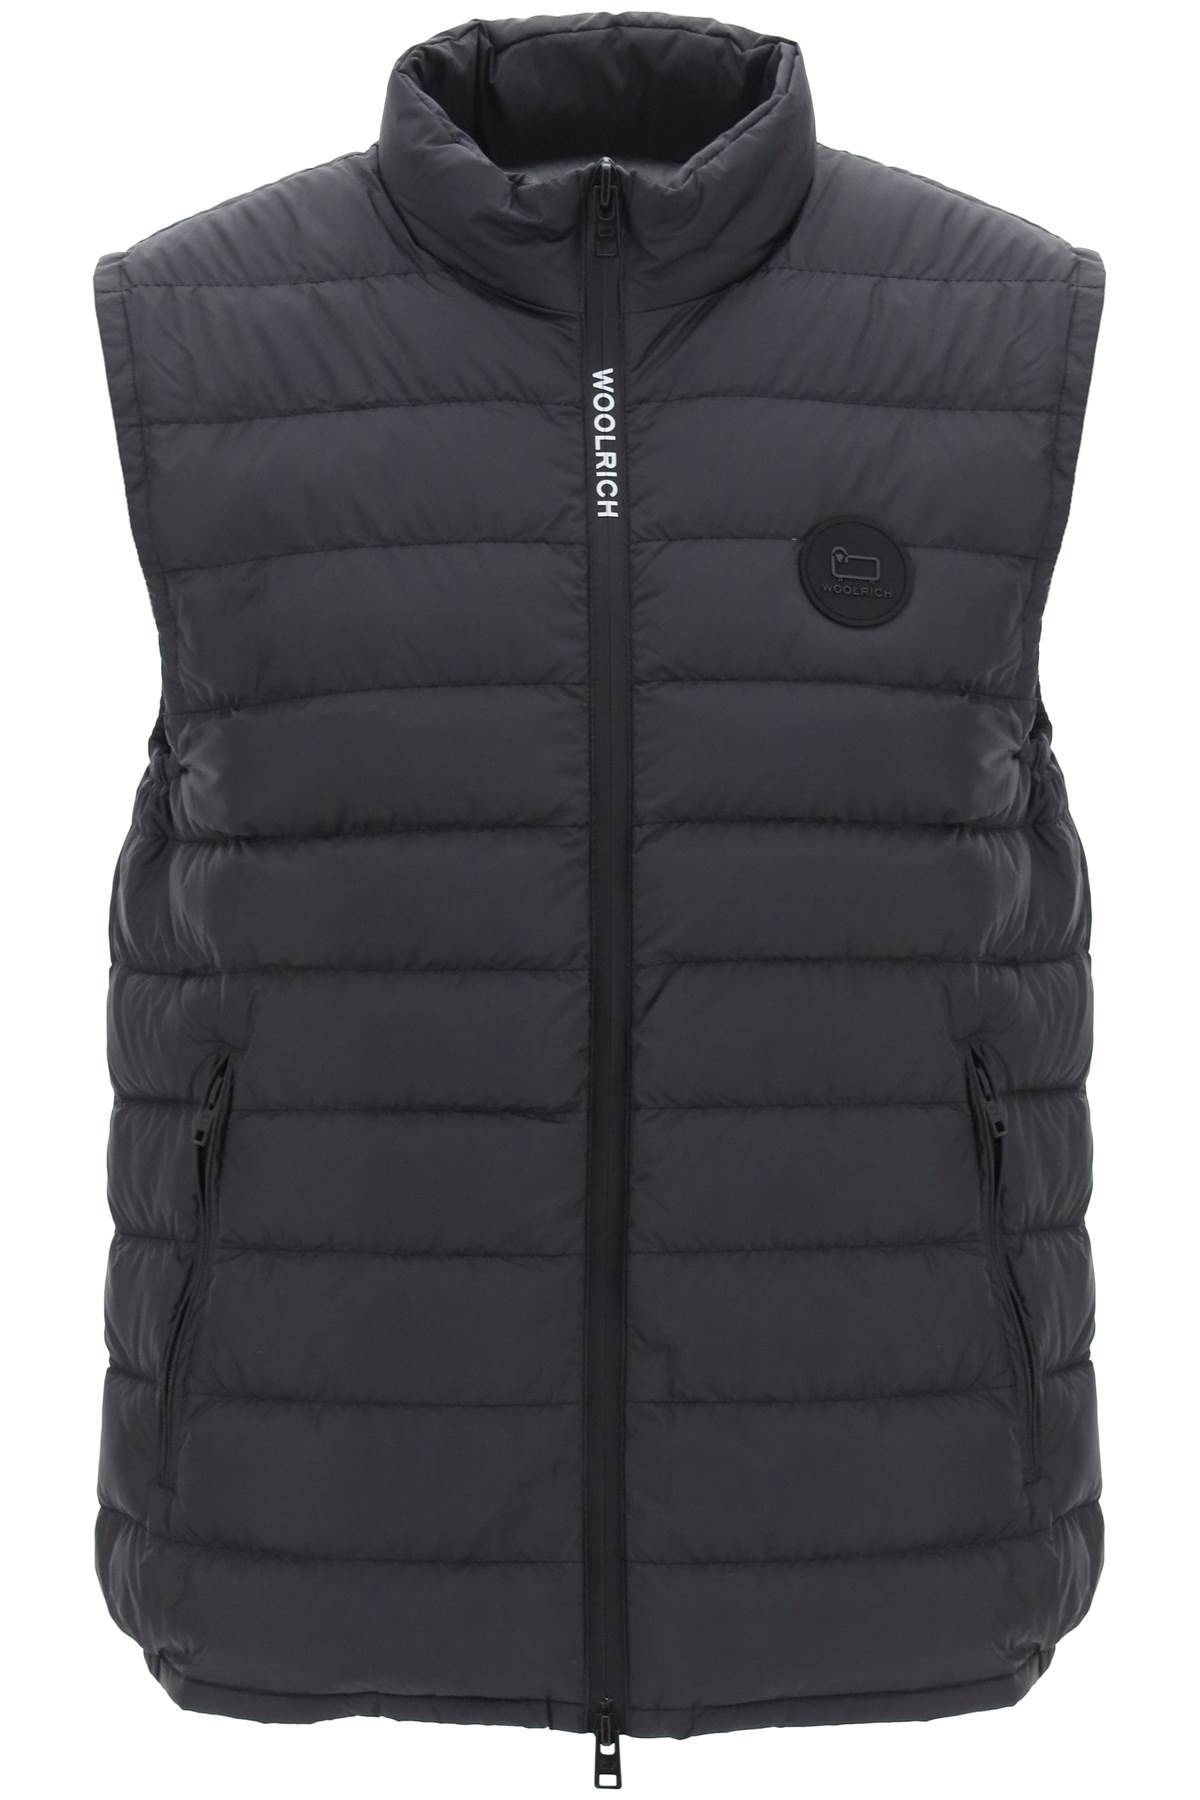 Woolrich WOOLRICH sundance puffer vest